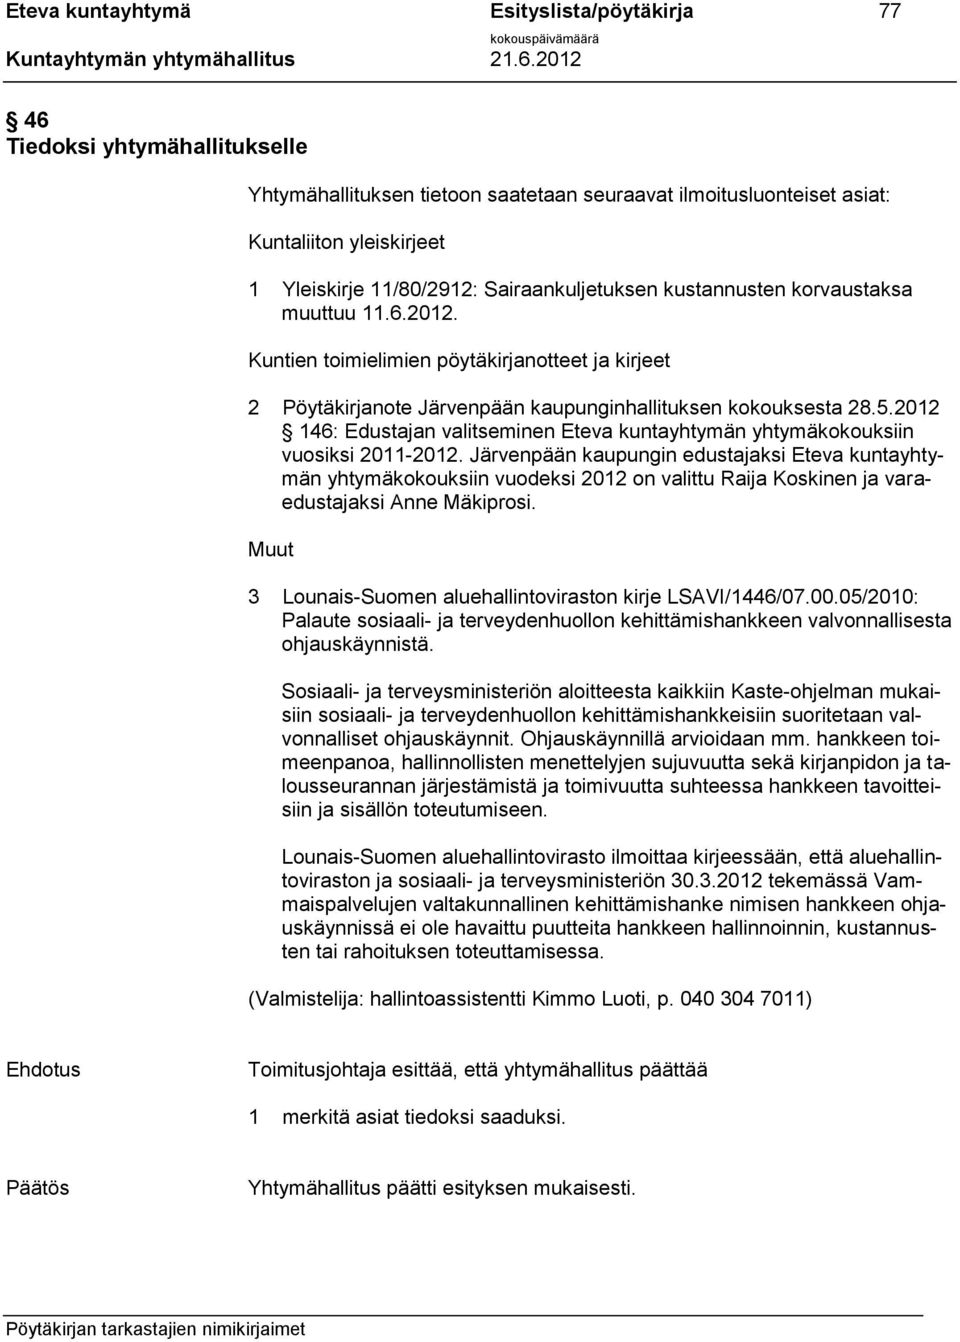 2012 146: Edustajan valitseminen Eteva kuntayhtymän yhtymäkokouksiin vuosiksi 2011-2012.